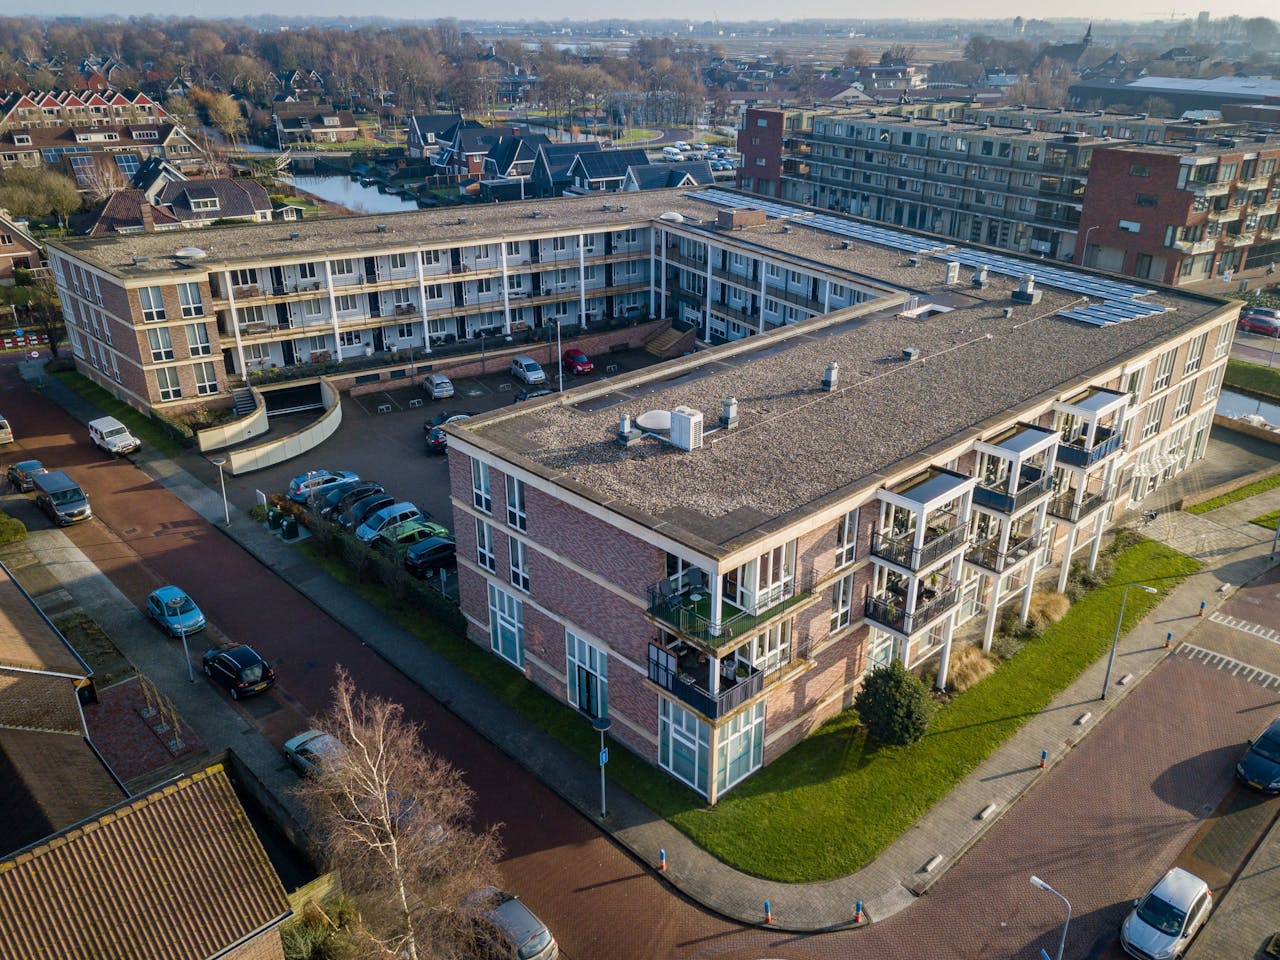 Heimstaden bezit na de acquisitie ongeveer 12.600 woningen in Nederland.